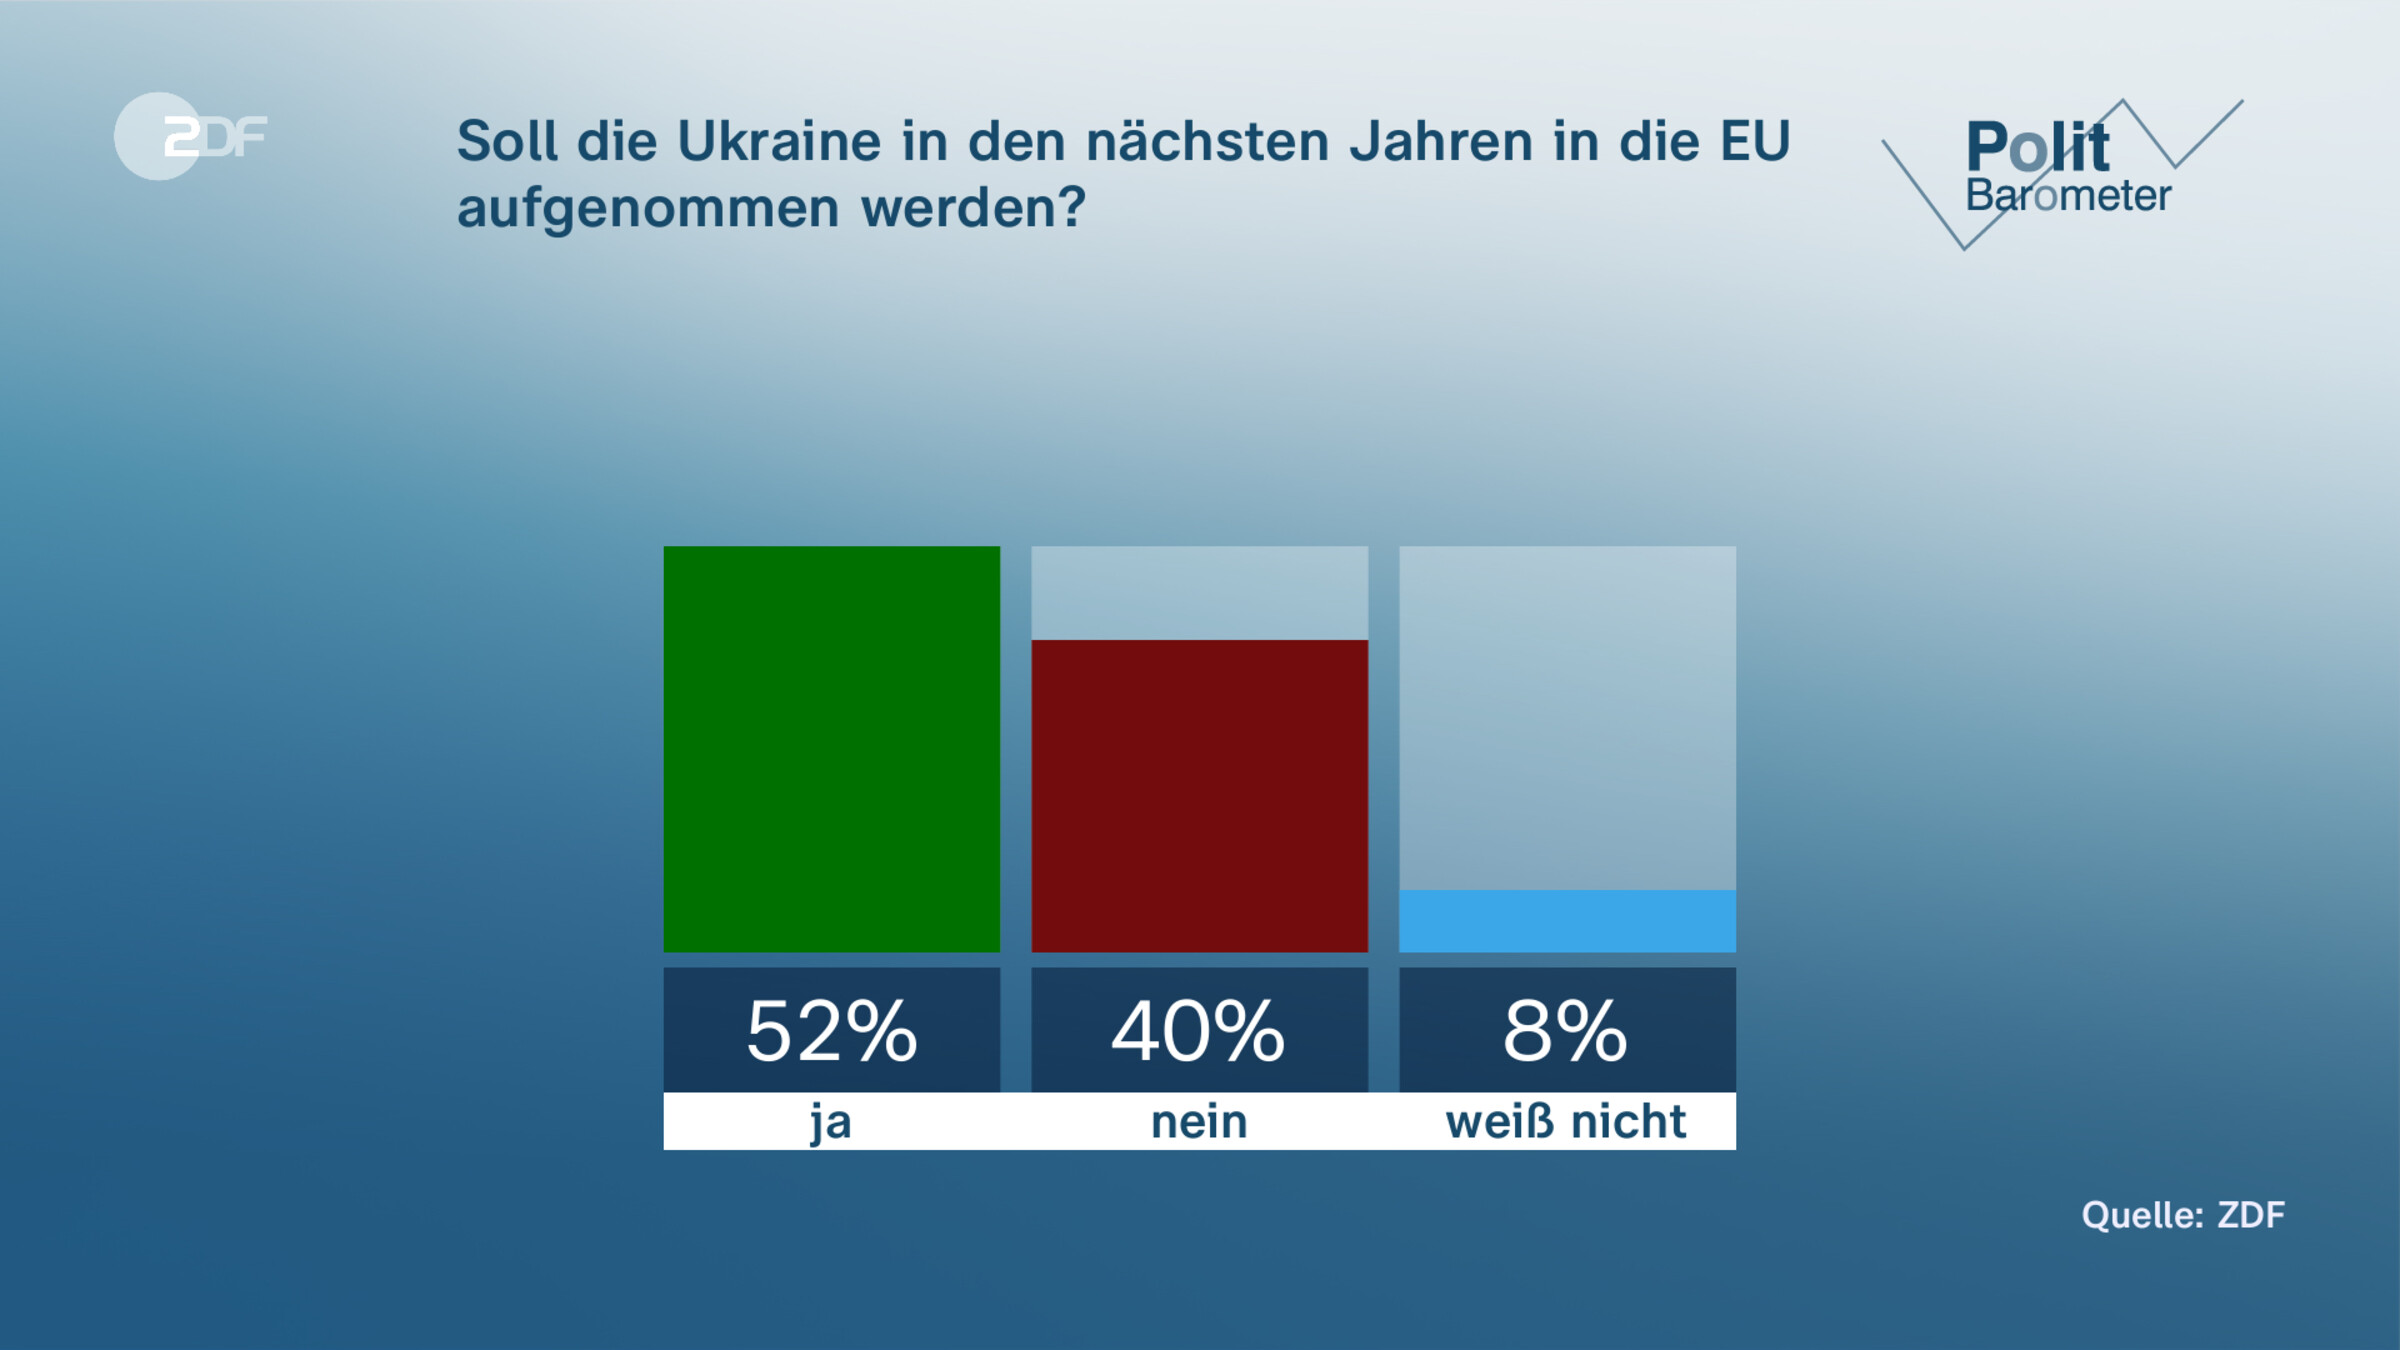 Soll die Ukraine in den nächsten Jahren in die EU aufgenommen werden?